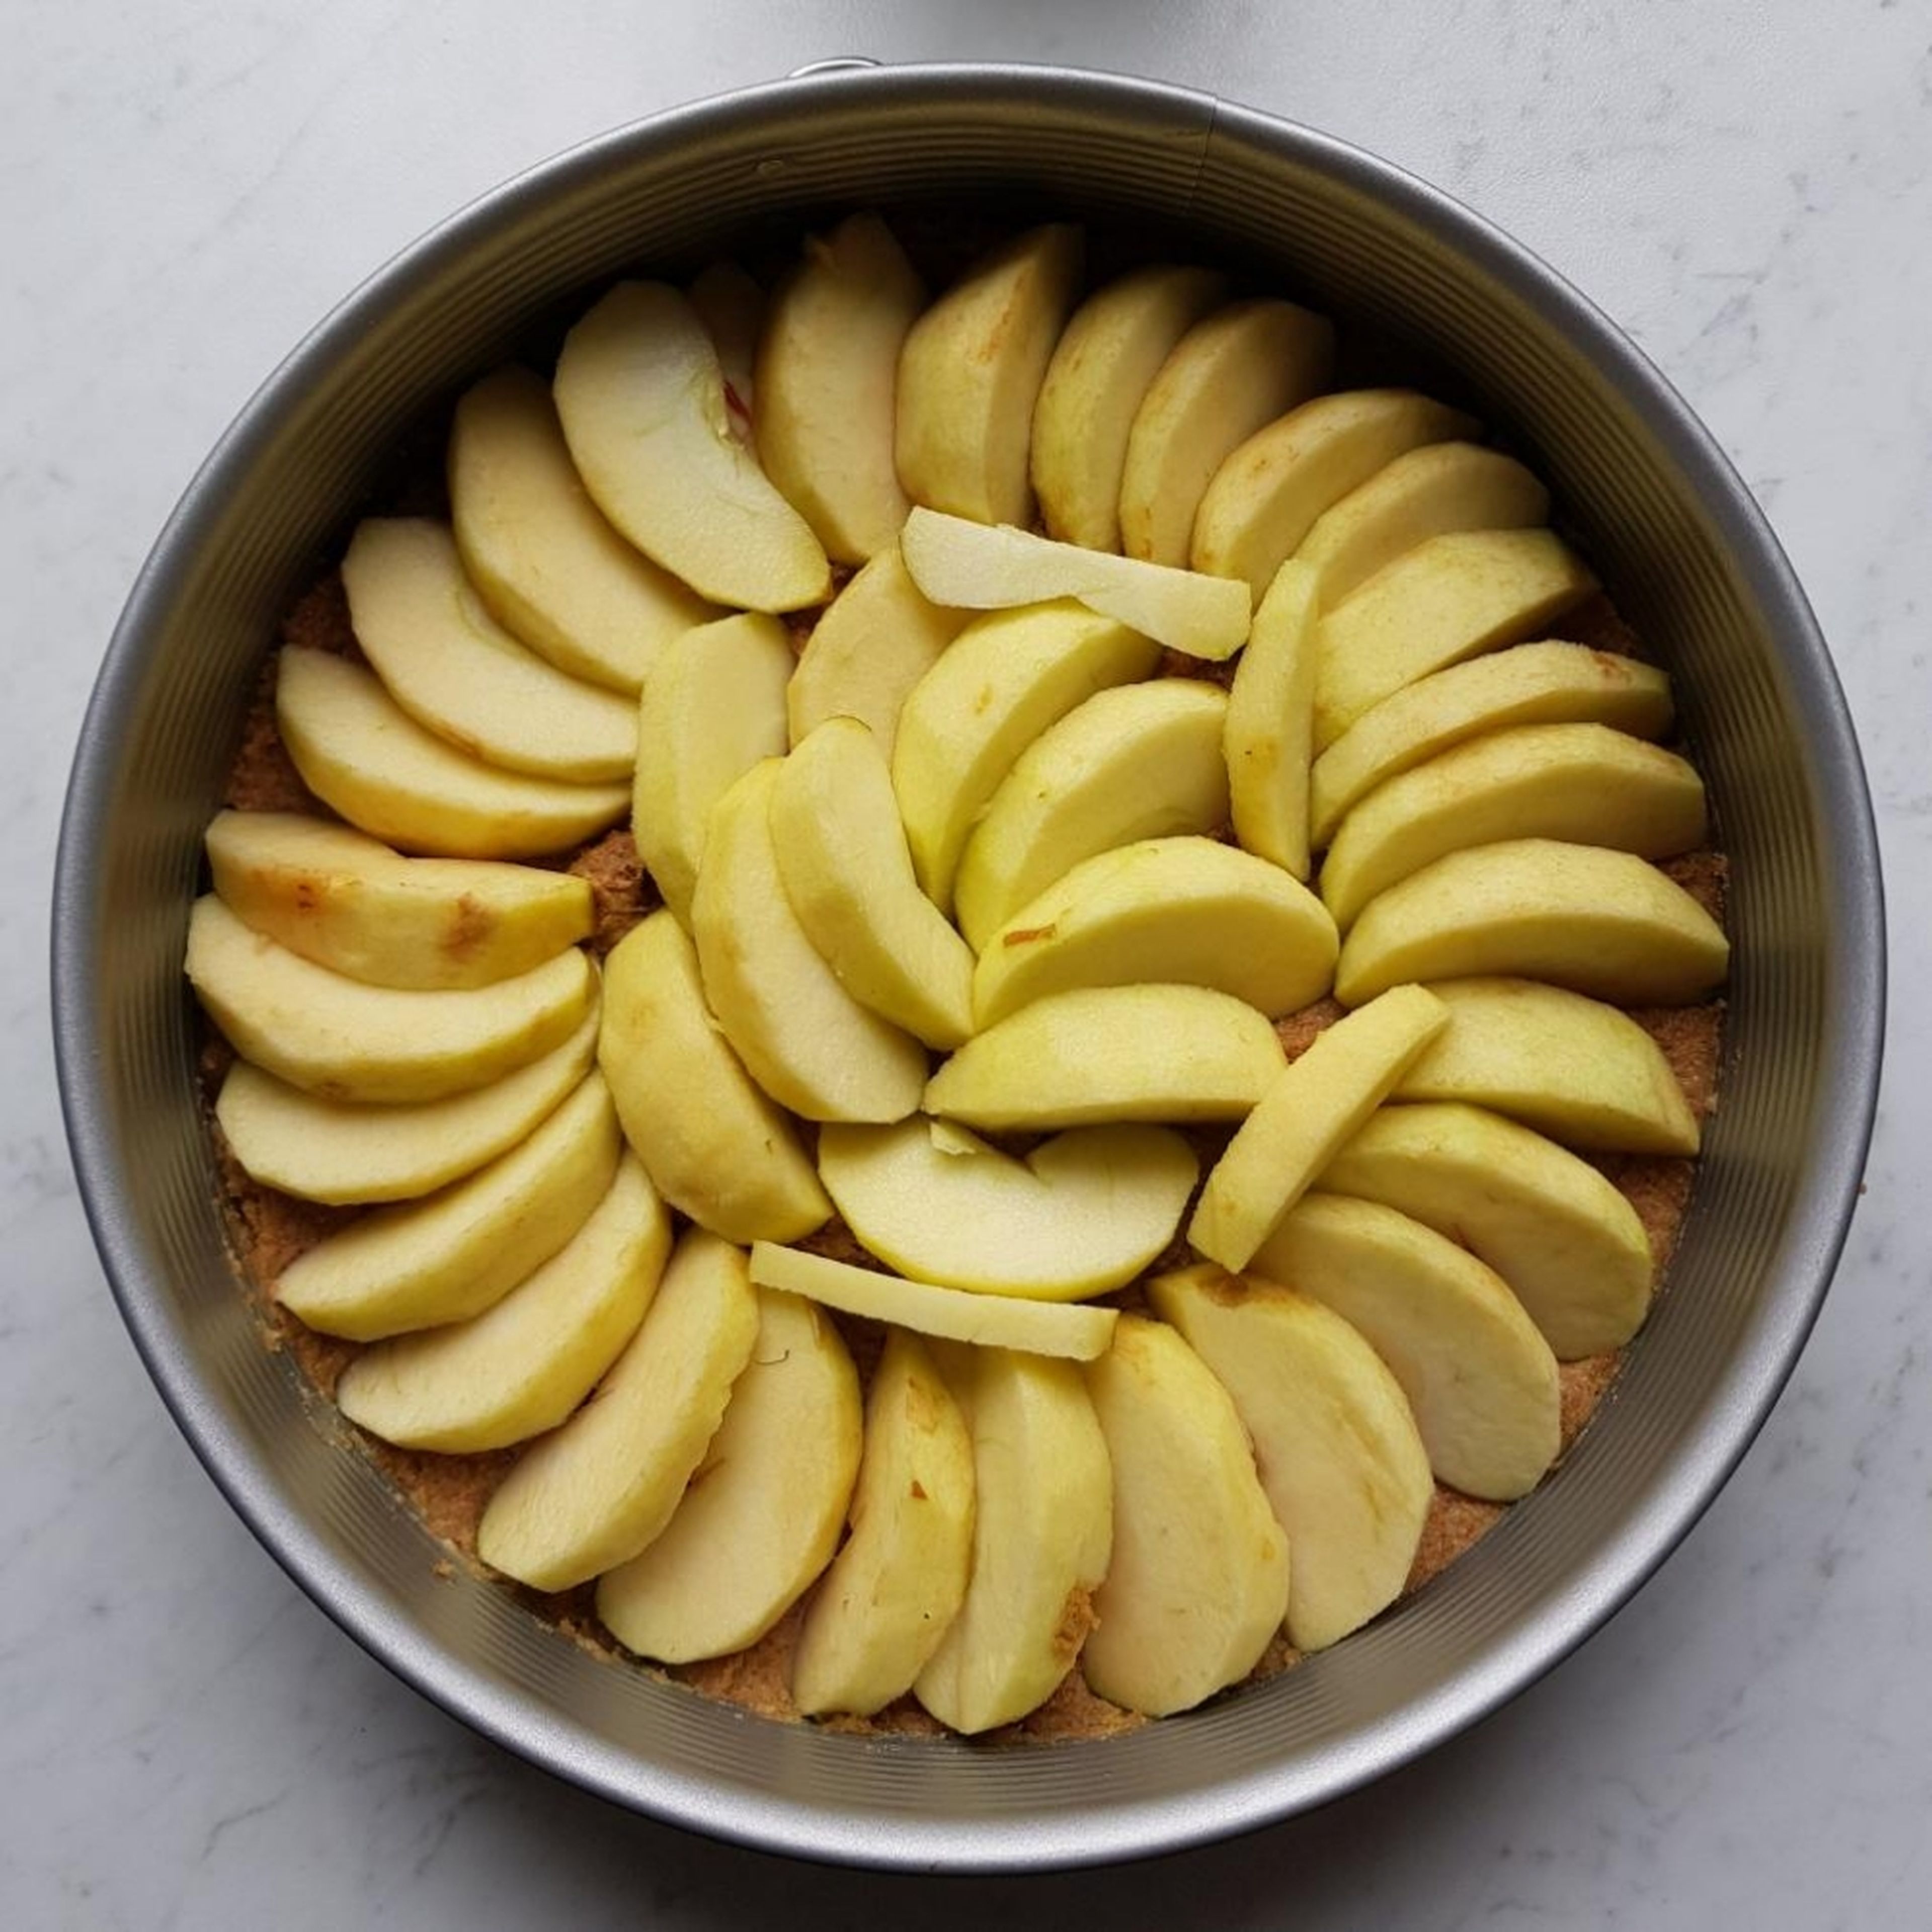 Die Äpfel schälen, entkernen und in Scheiben schneiden, die nun kreisförmig und großzügig auf dem Teig angeordnet bzw. leicht ineinander geschichtet werden. Je mehr Äpfel ihr unter bekommt, desto fruchtiger wird der Kuchen später.